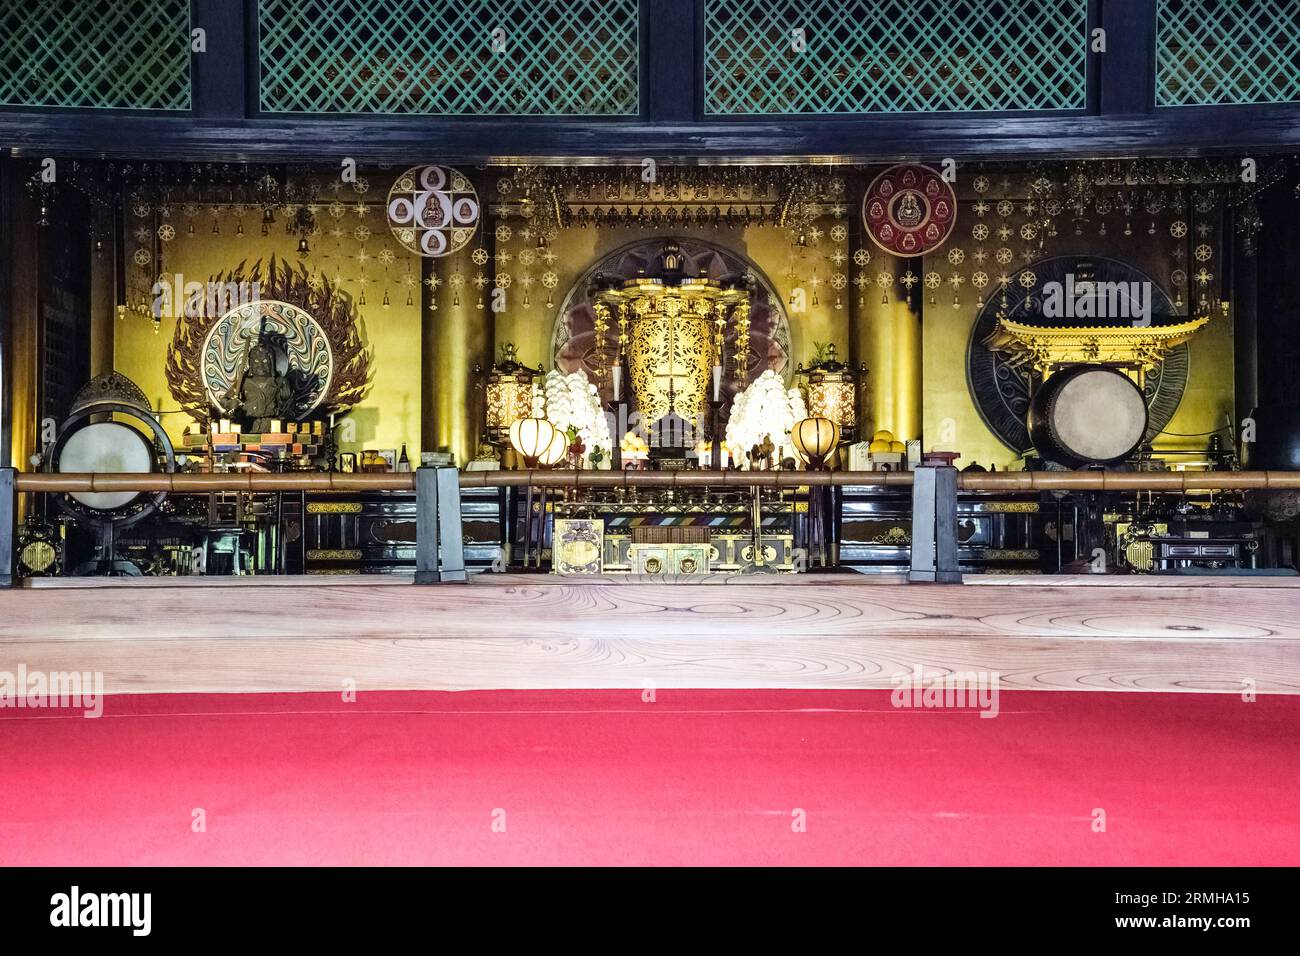 Giappone, Fukuoka. Altare interno del tempio buddista Tocho-ji, area di Hakata. Foto Stock